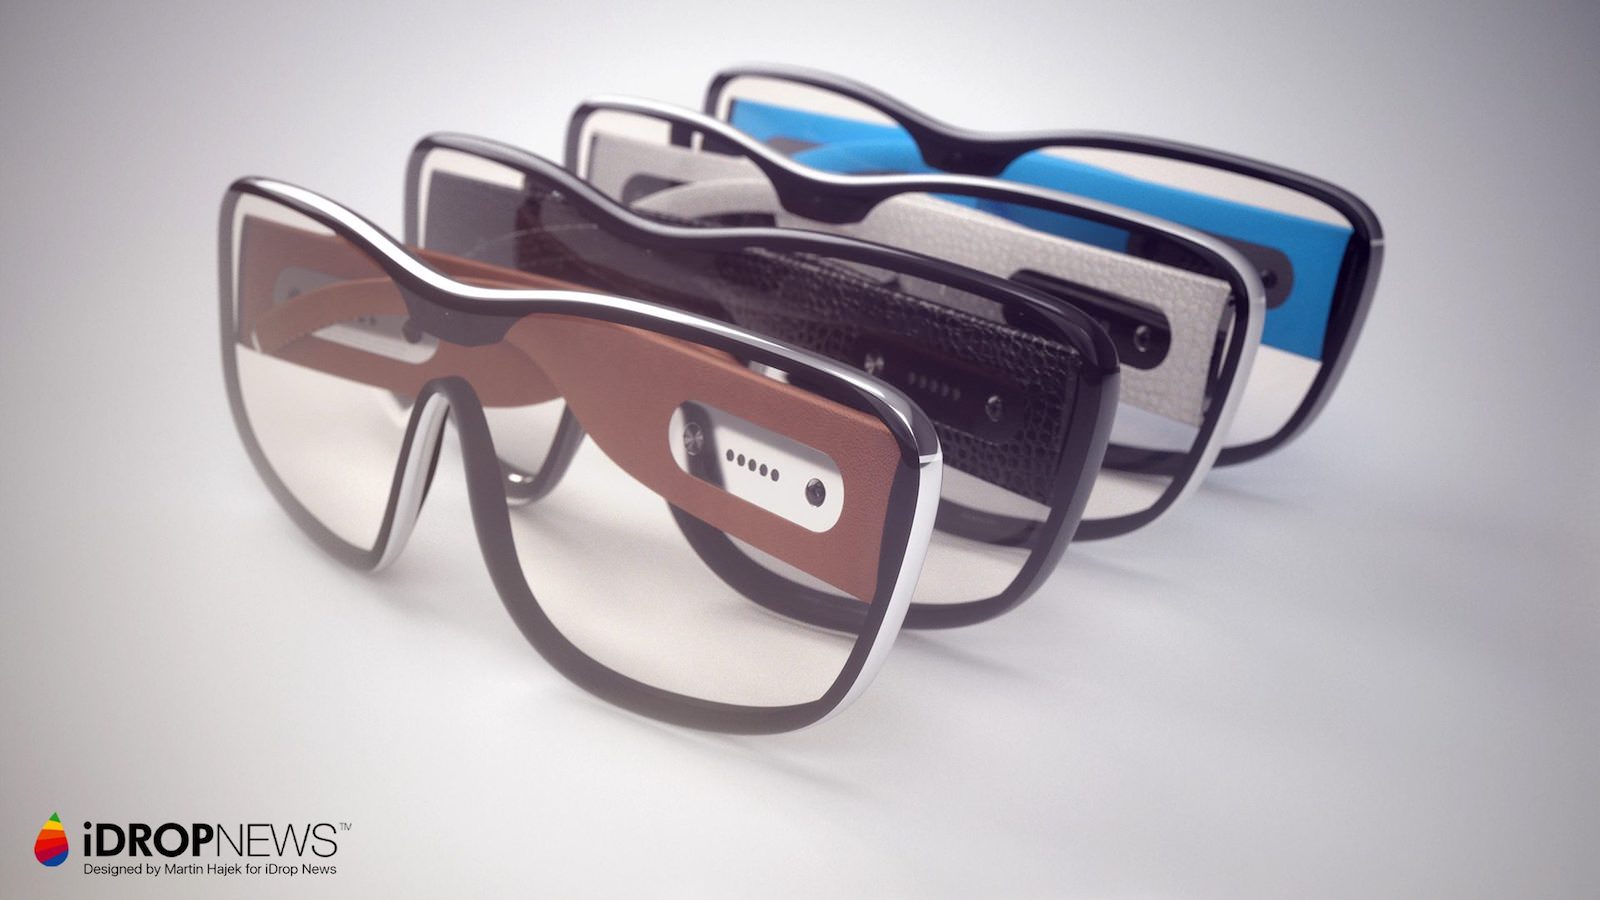 Apple-Glass-AR-Glasses-iDrop-News-x-Martin-Hajek-5.jpg